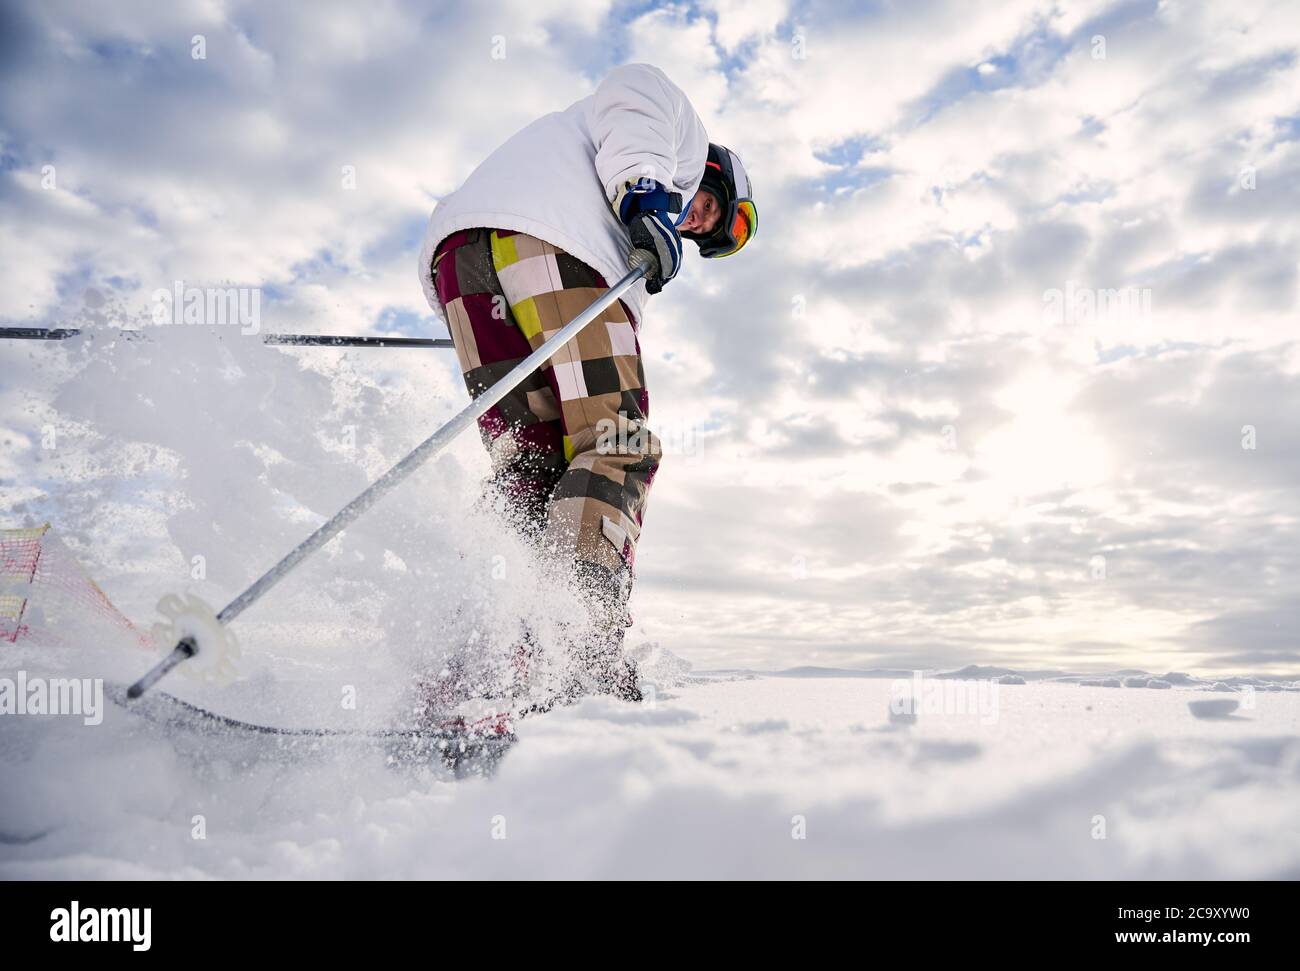 Low-Angle-Ansicht Momentaufnahme der Beine des Skifahrers machen einen Sprung auf weißen schneebedeckten Oberfläche gegen schönen bewölkten Himmel. Mann trägt bunte Skihose und weiße Winterjacke. Konzept der Wintersport-Aktivitäten Stockfoto